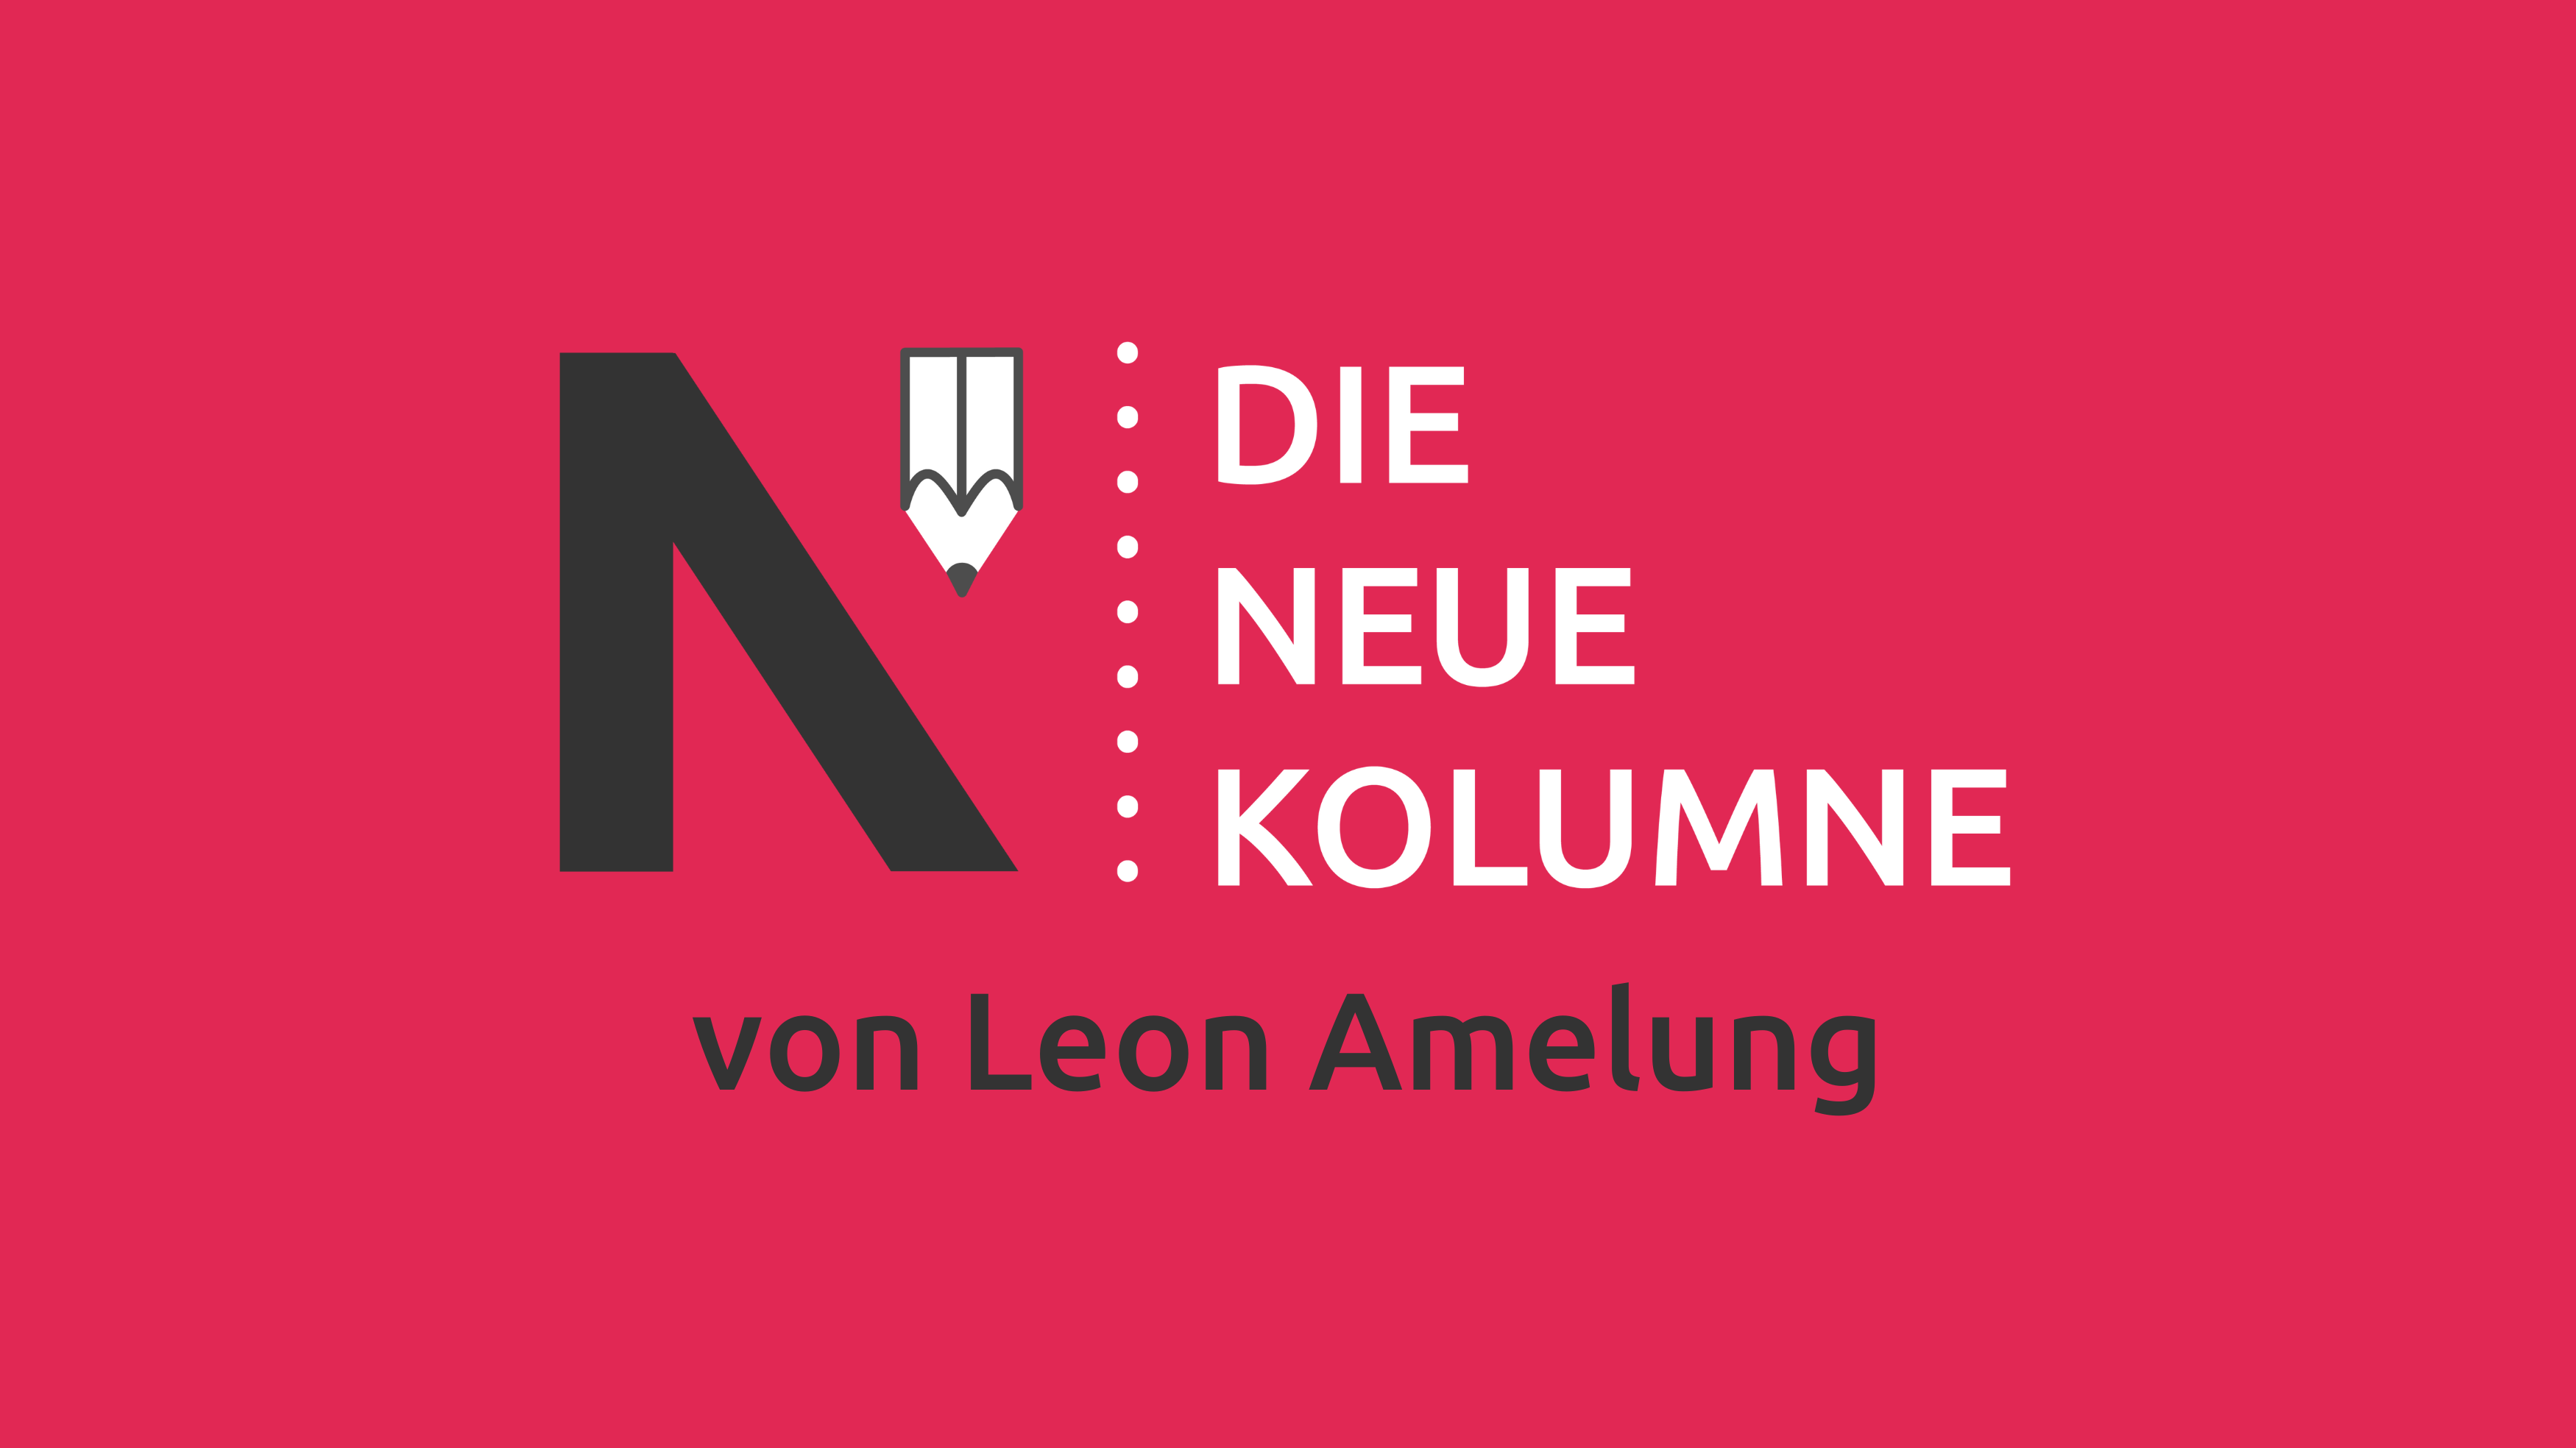 Das Logo von die neue Norm auf pink farbendem Grund. Rechts davon steht: Die Neue Kolumne. Unten steht: Von Leon Amelung.